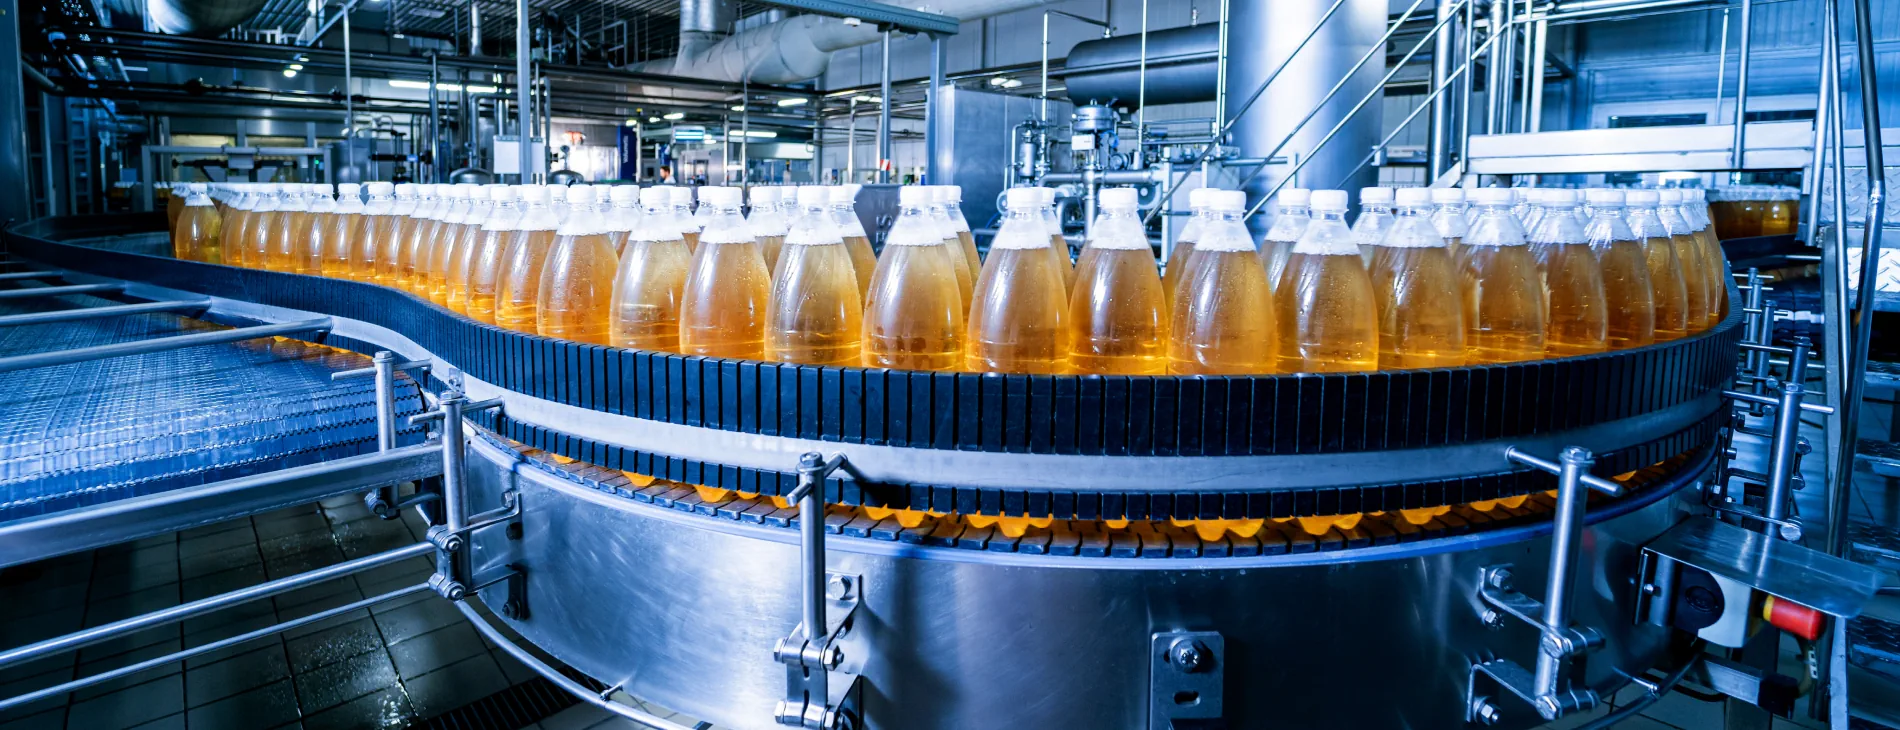 Filled beverage bottles on a conveyor belt of a bottling plant